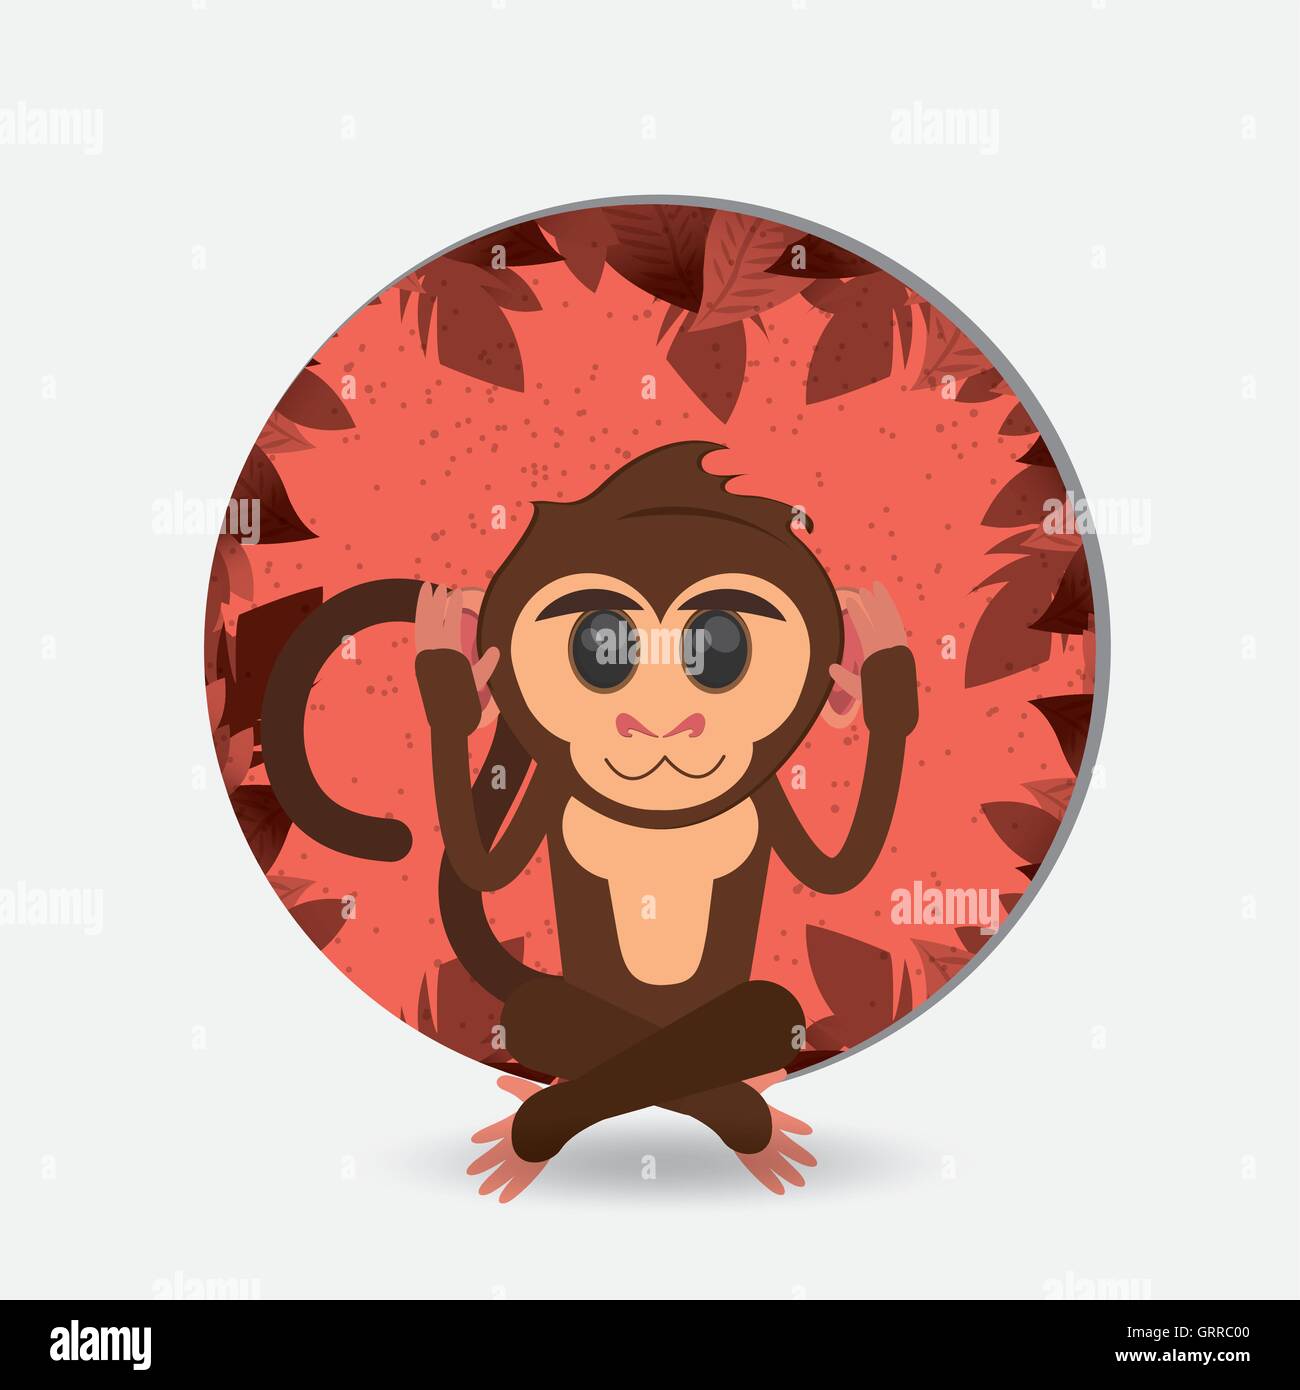 jungle monkey cartoon emblem Stock Vector